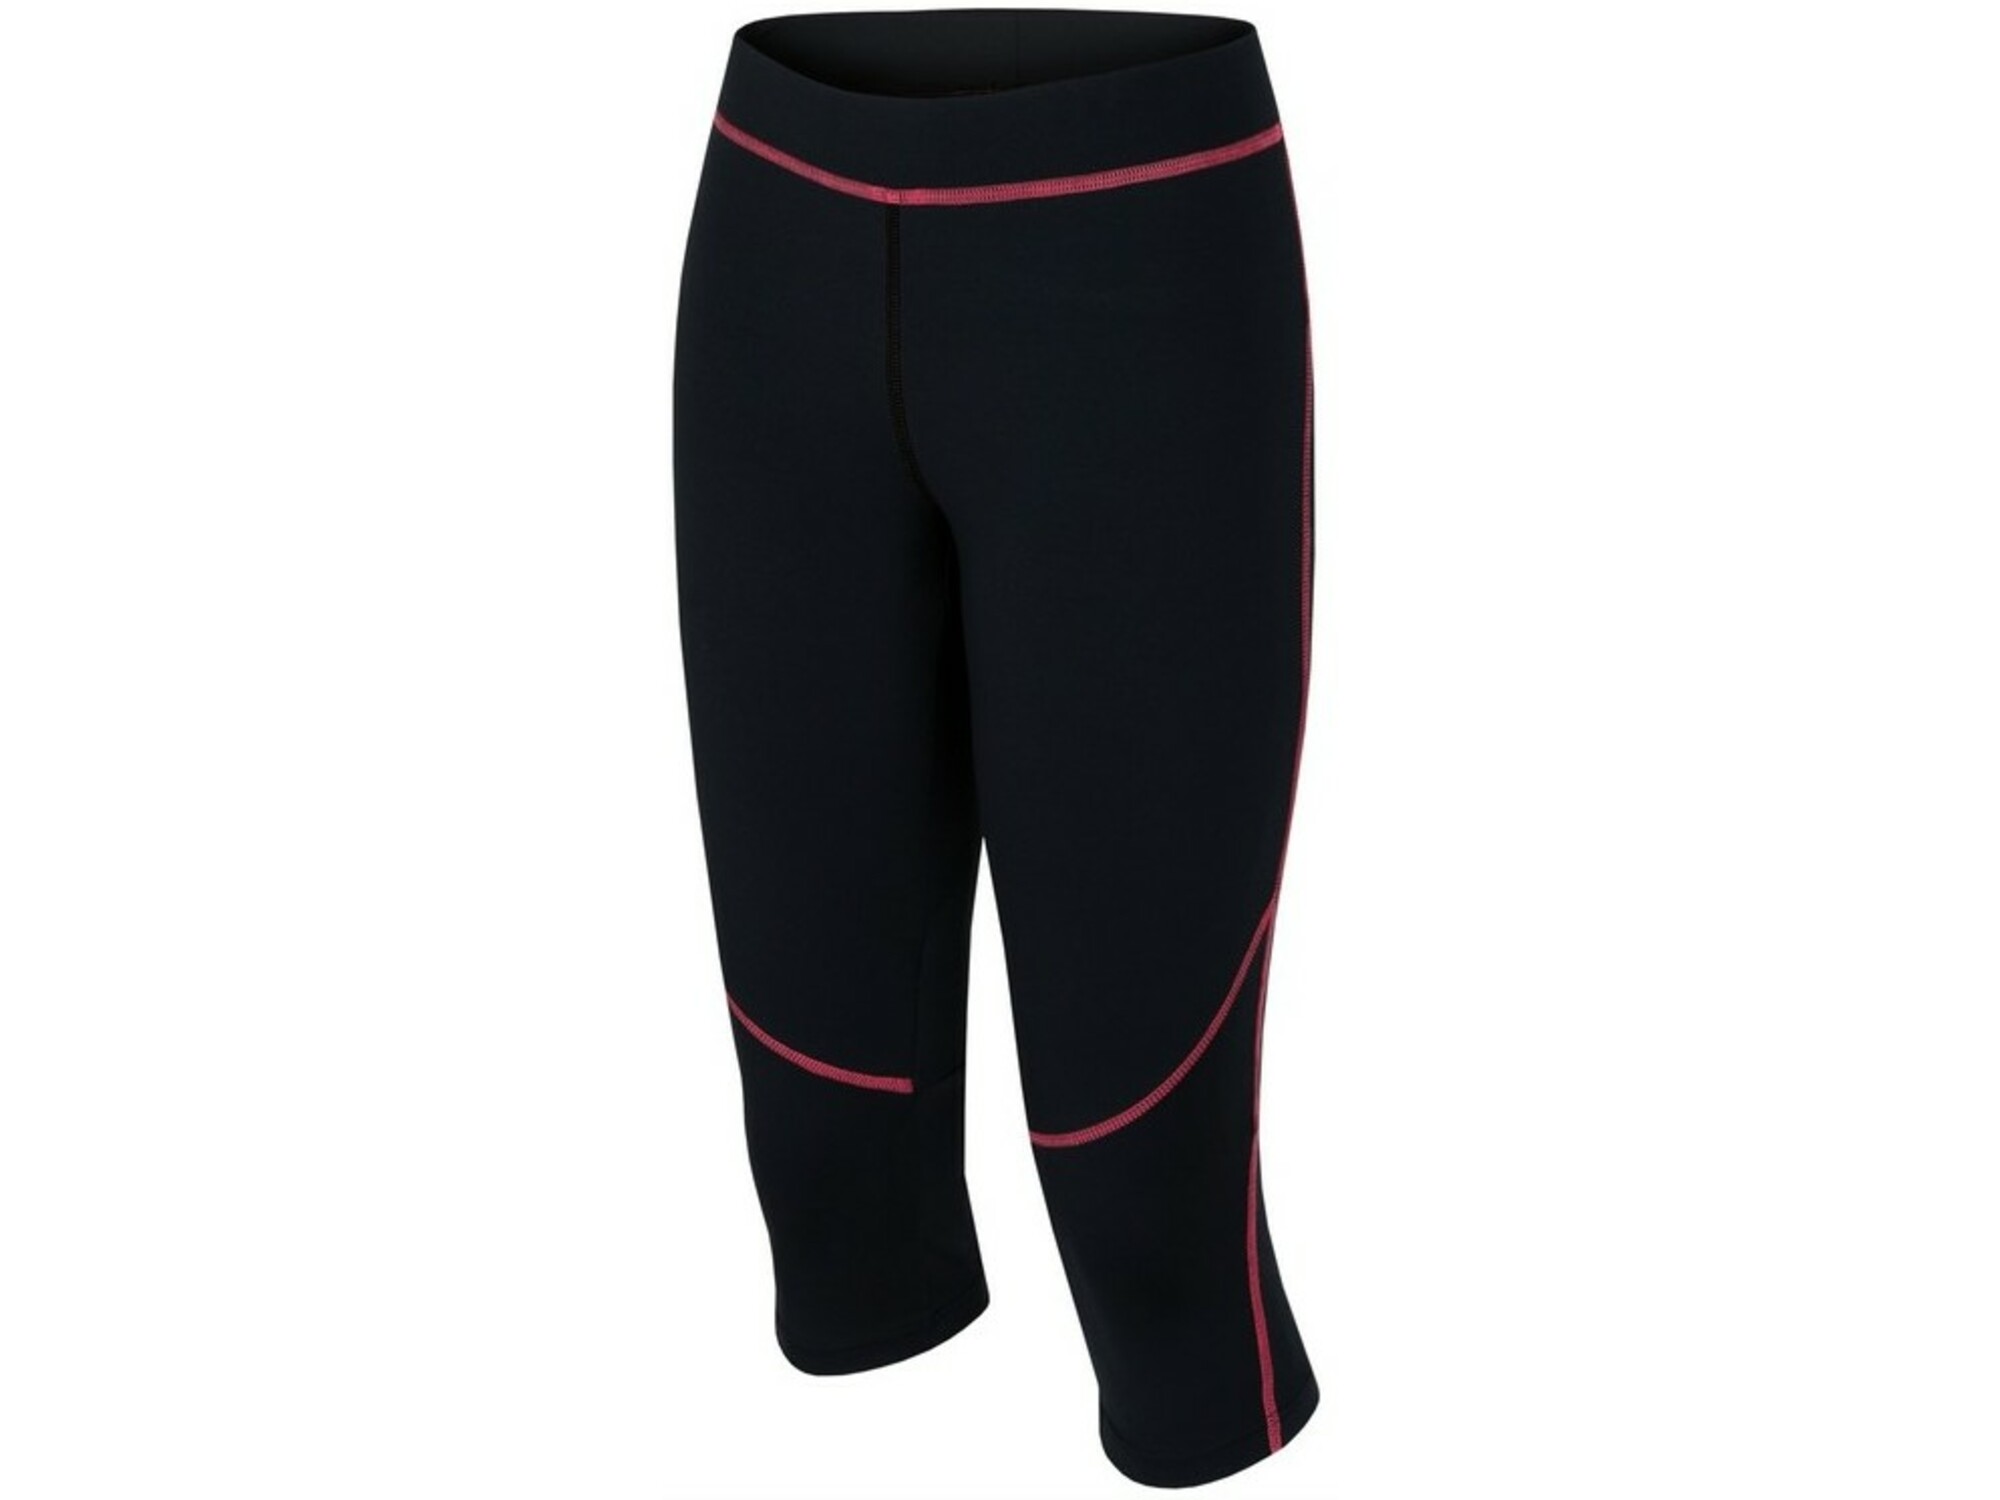 Hannah športne hlače (pajkice)  relay     antracit rdeča 38 Relay antracit-rdeča, velikost 38 118HH0094LC.02.38